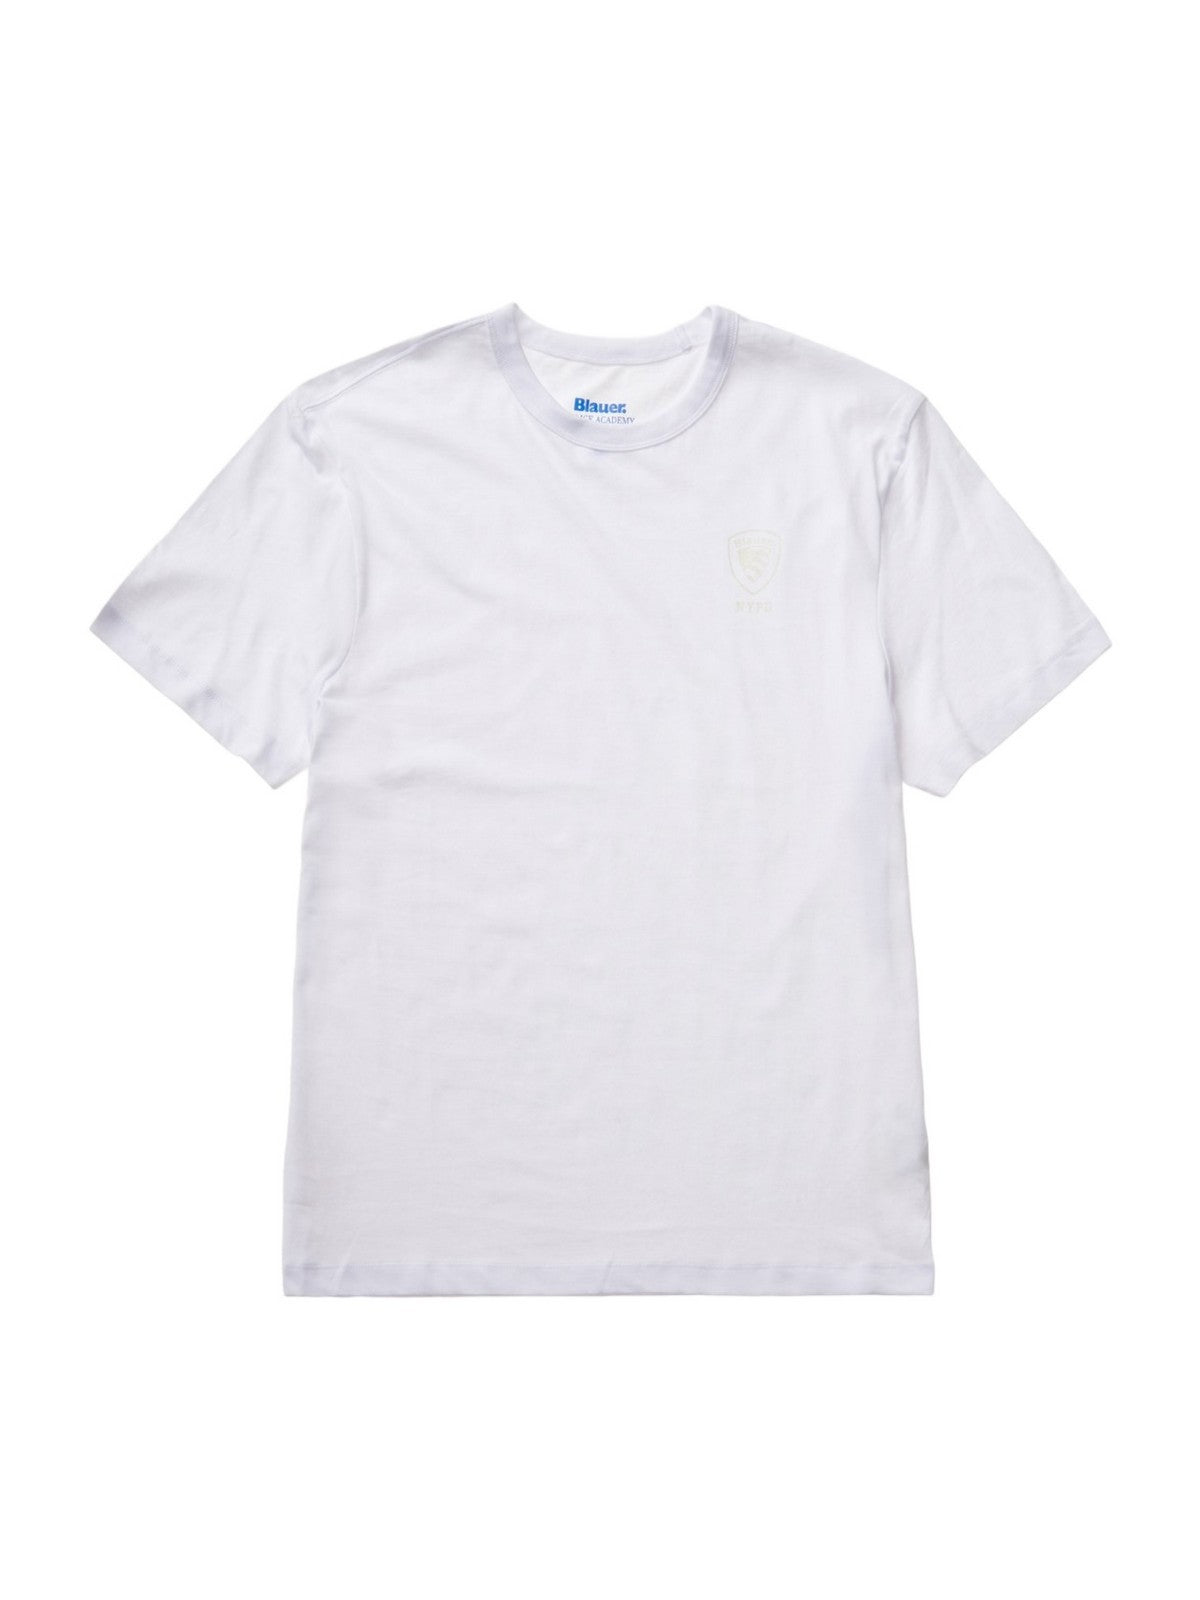 BLAUER T-Shirt et polo pour hommes 24SBLUH02143 004547 100 Blanc